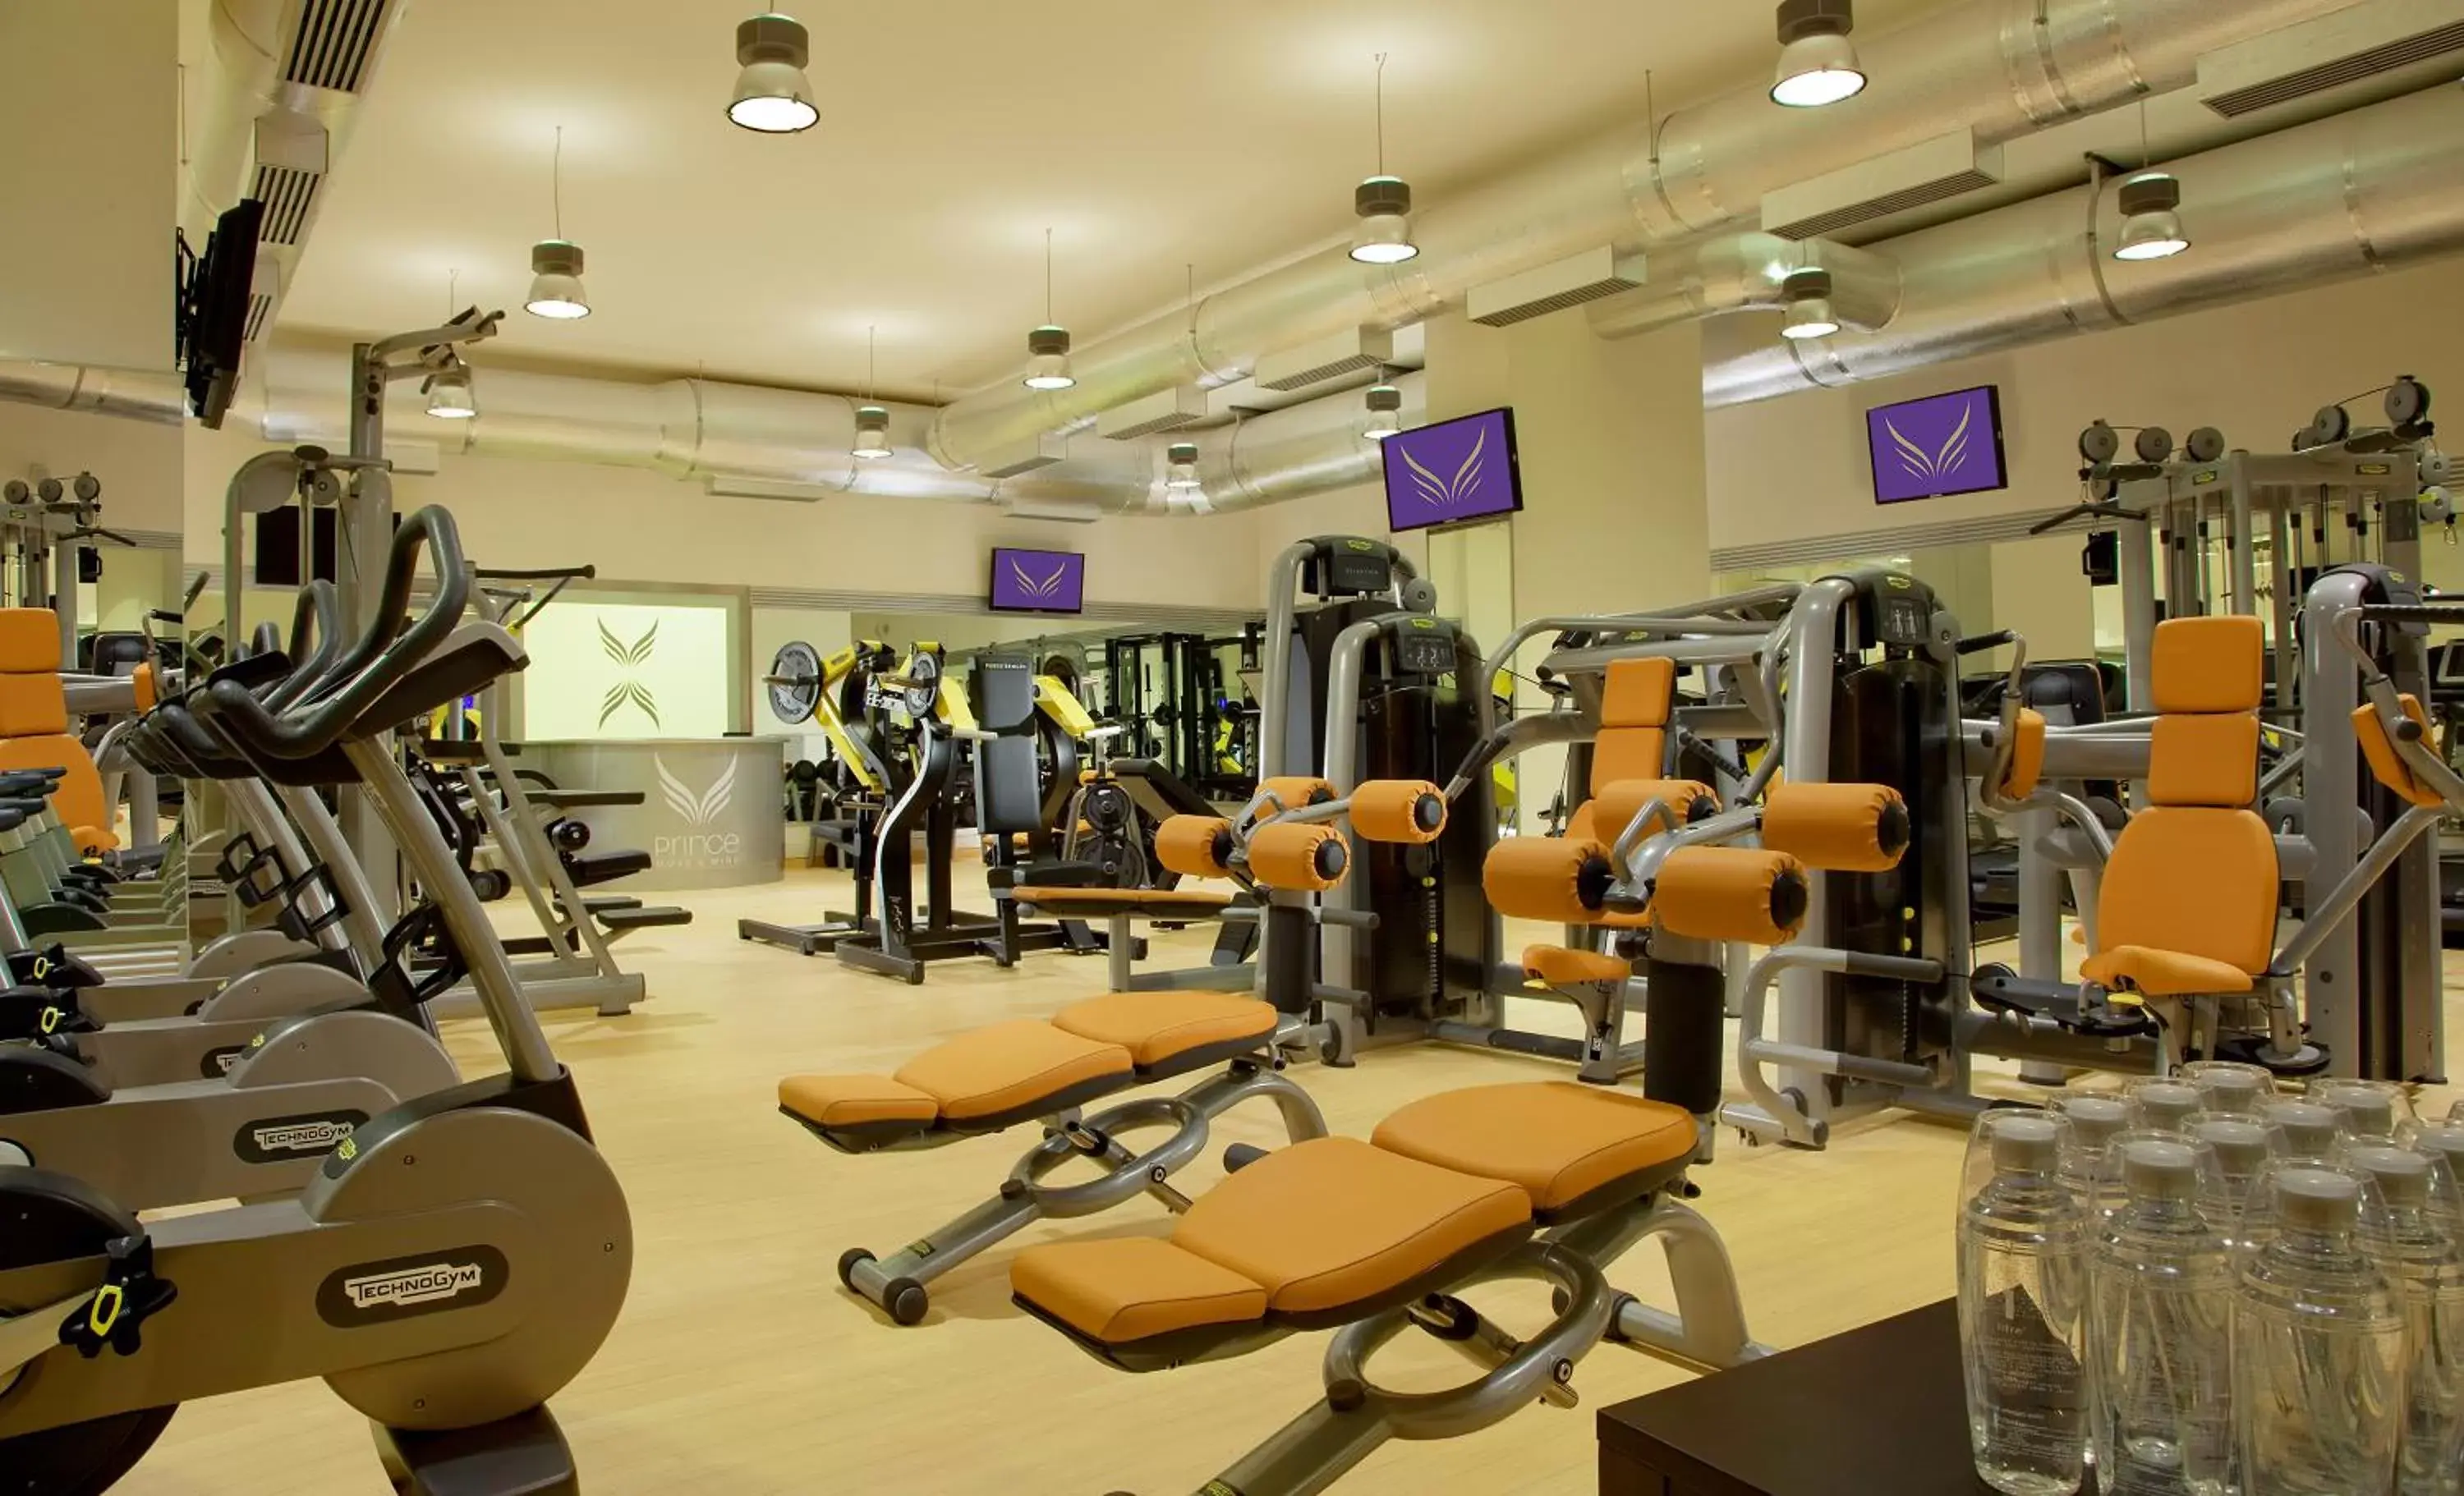 Fitness centre/facilities, Fitness Center/Facilities in Parco dei Principi Grand Hotel & SPA